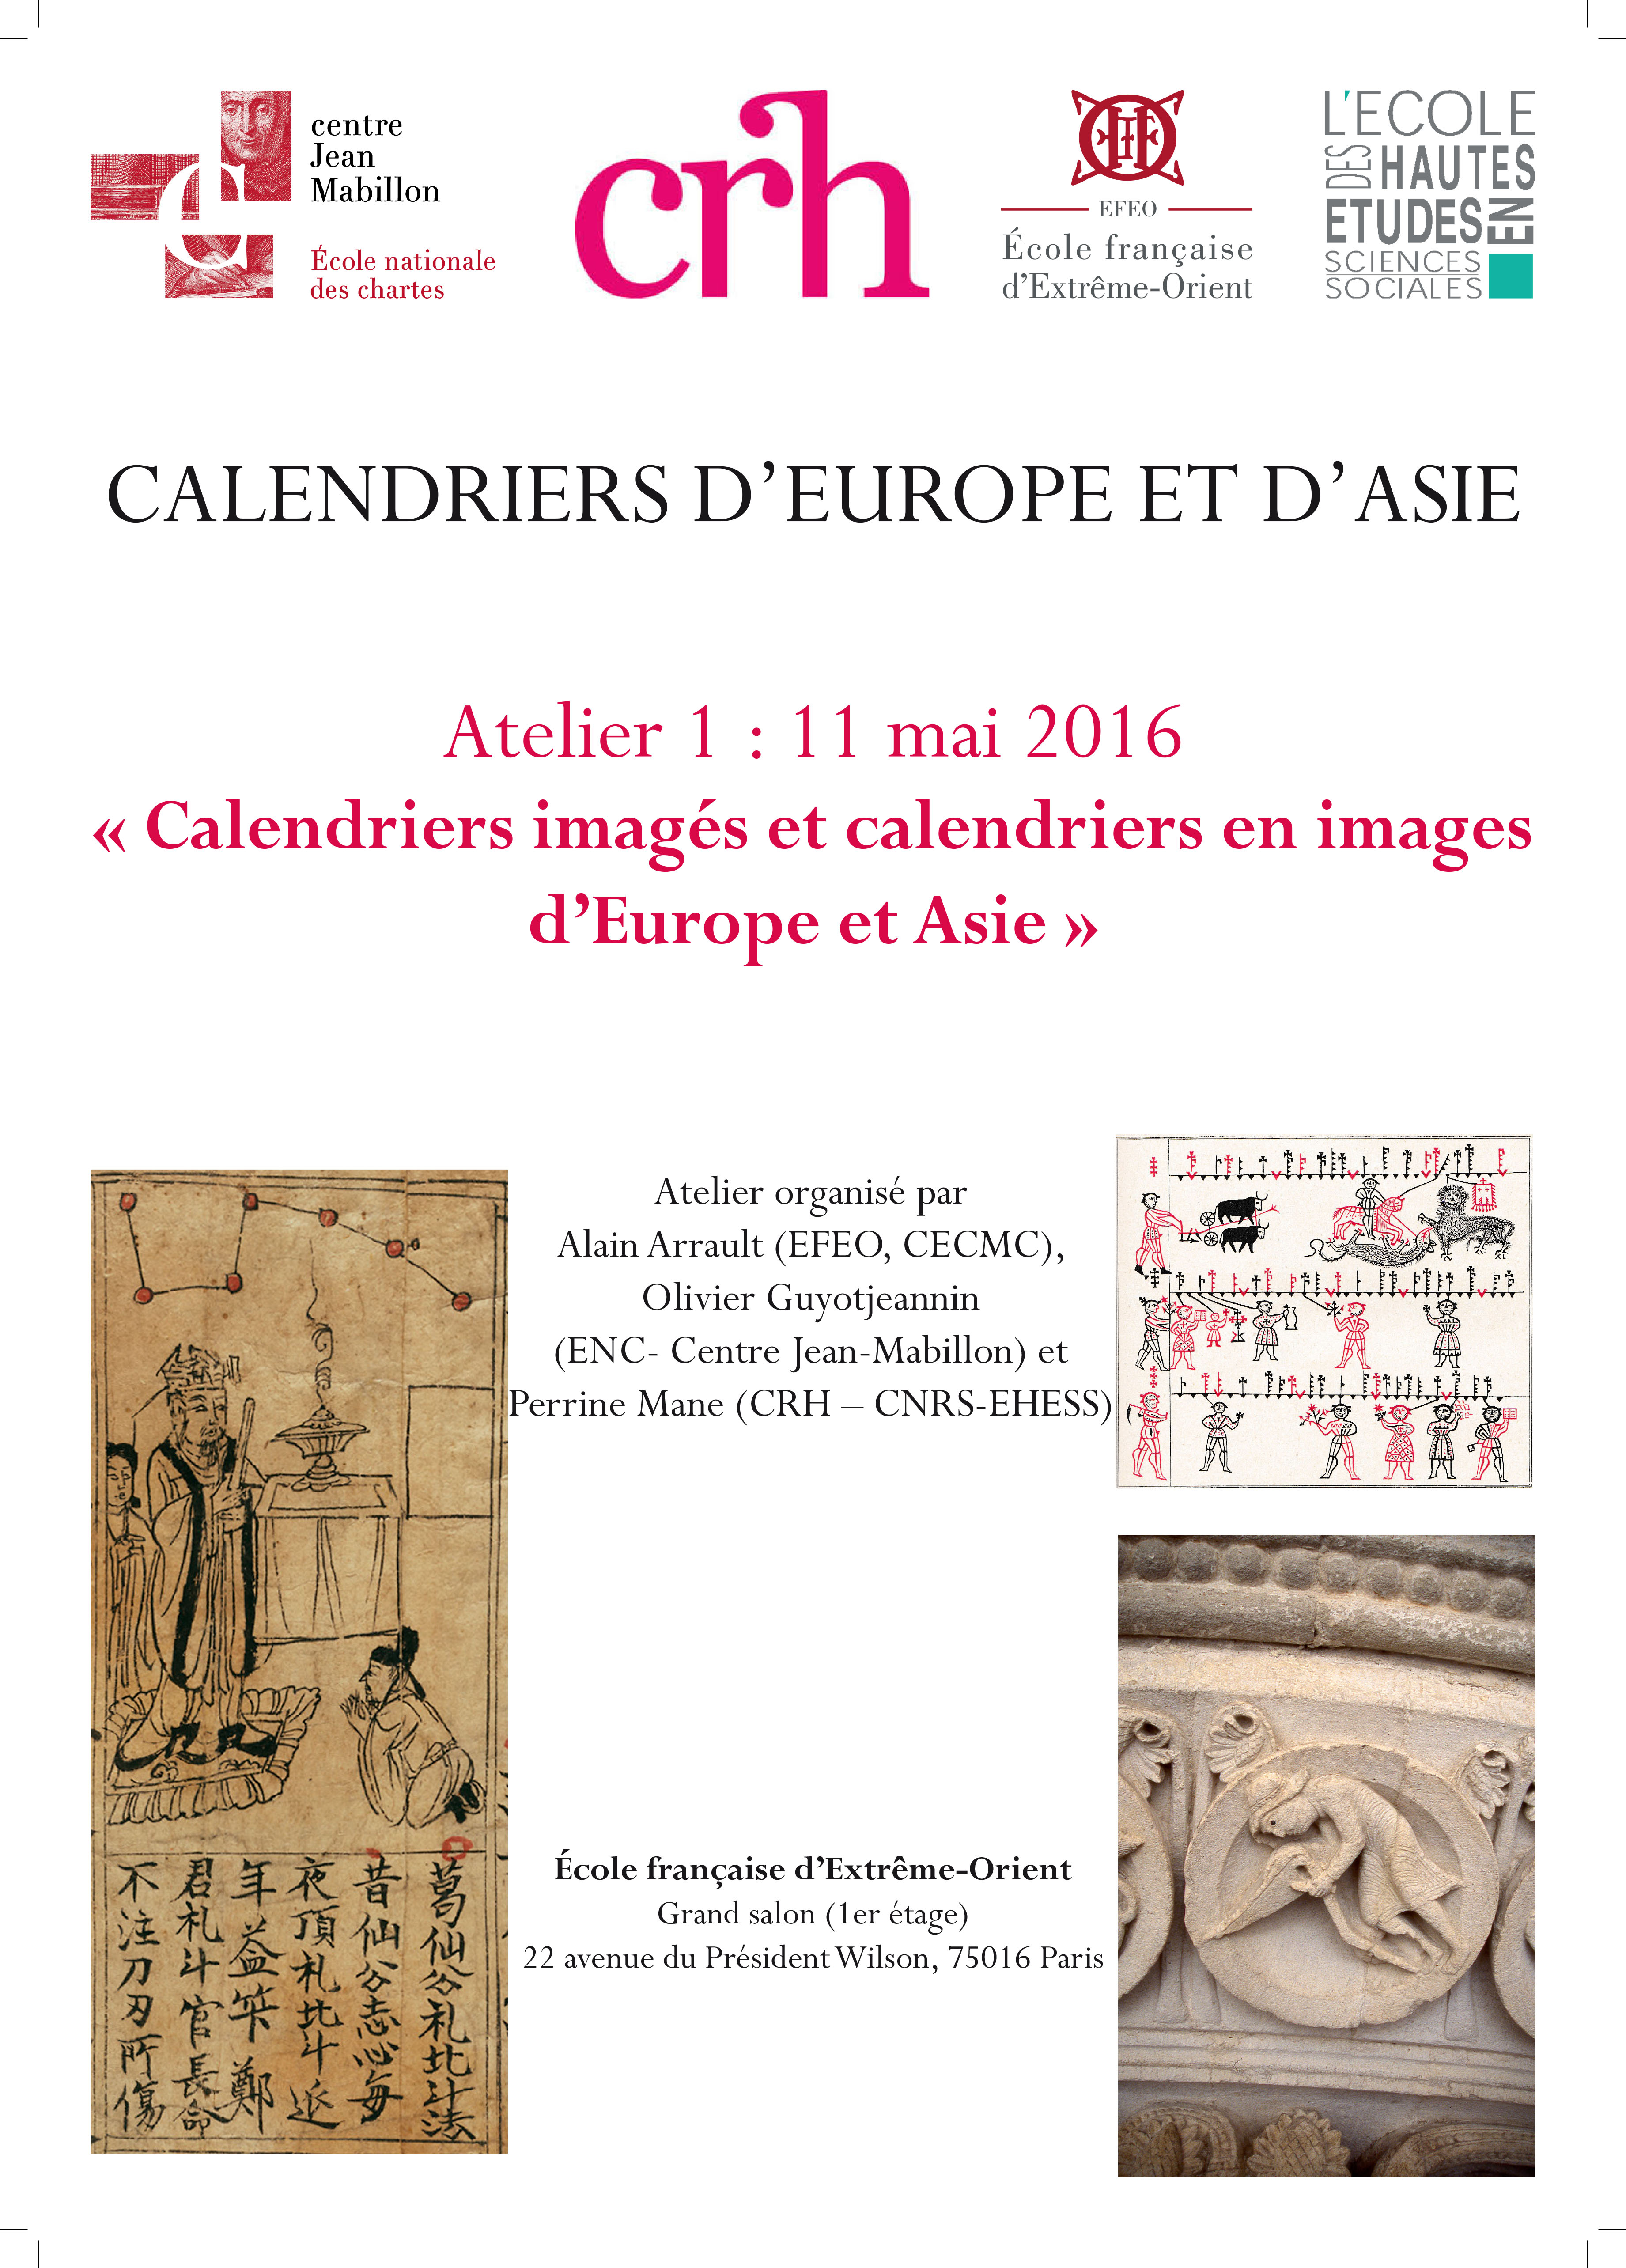 Calendriers imagés et calendriers en images d’Europe et d’Asie